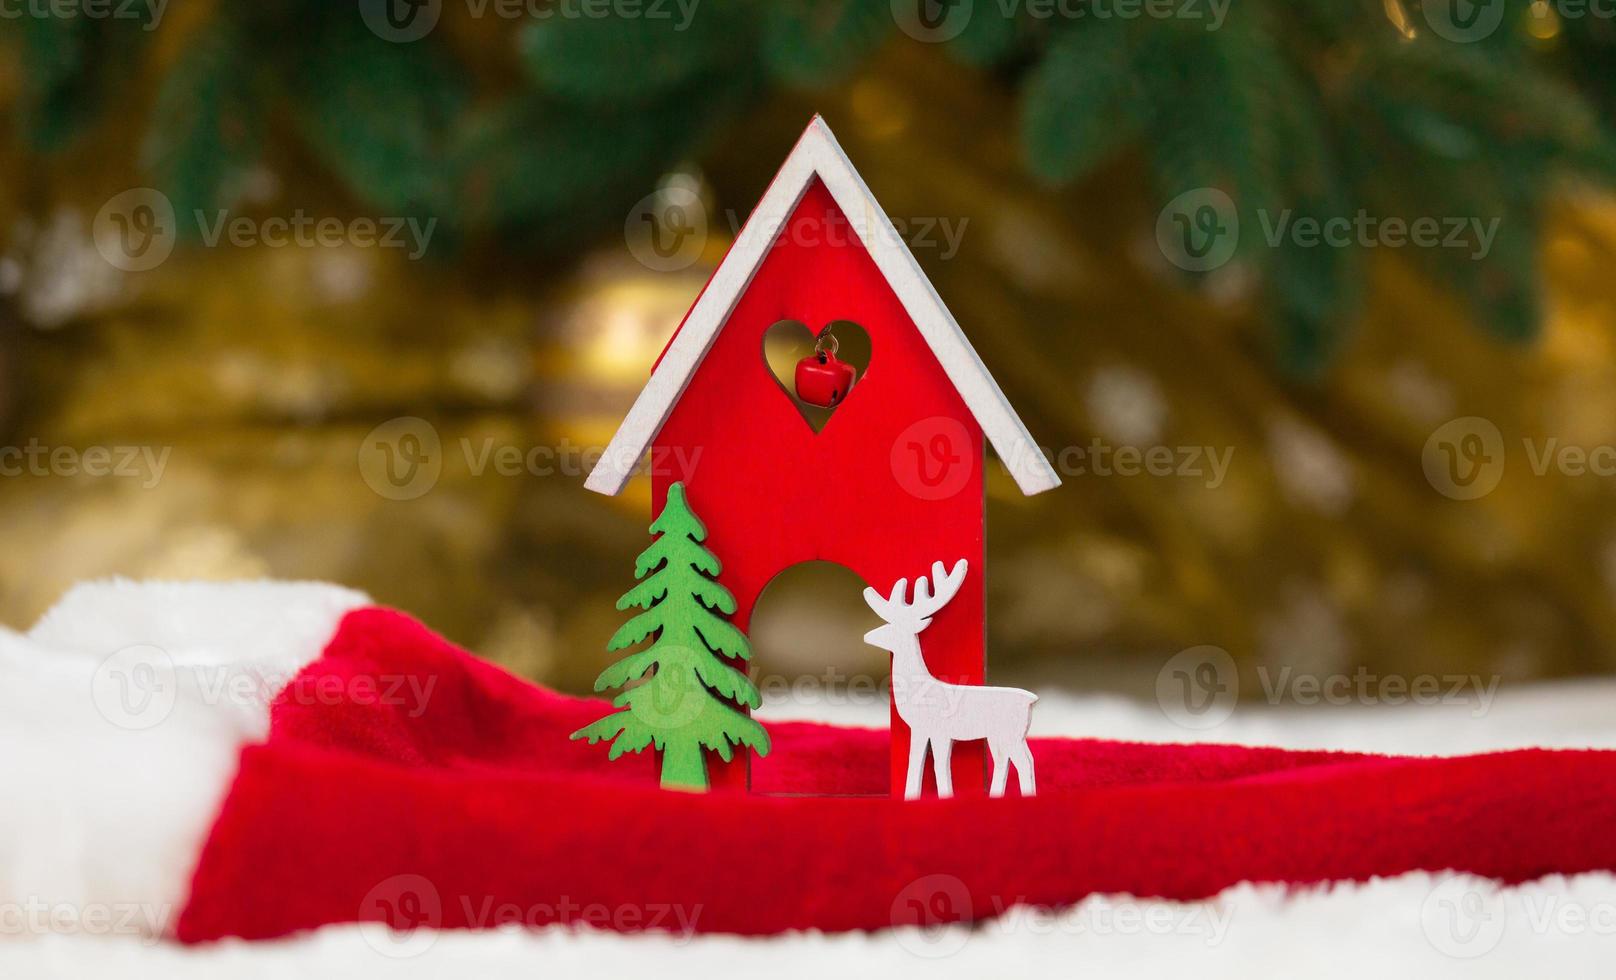 kerst houten speelgoed huis herten en boom op een kerstmuts en een witte deken die sneeuw imiteert foto